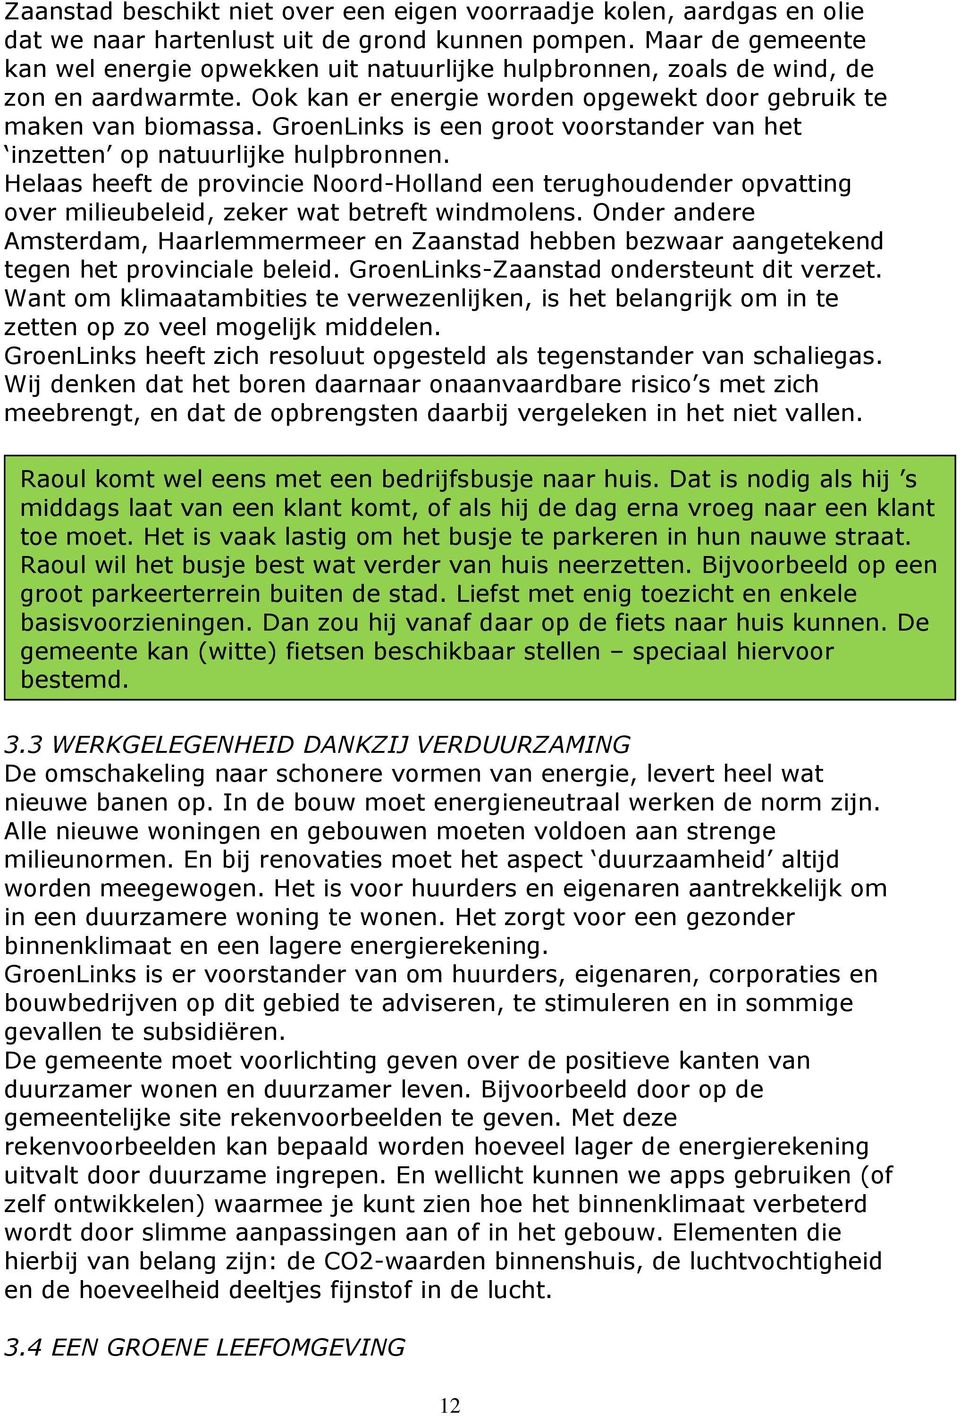 GroenLinks is een groot voorstander van het inzetten op natuurlijke hulpbronnen. Helaas heeft de provincie Noord-Holland een terughoudender opvatting over milieubeleid, zeker wat betreft windmolens.